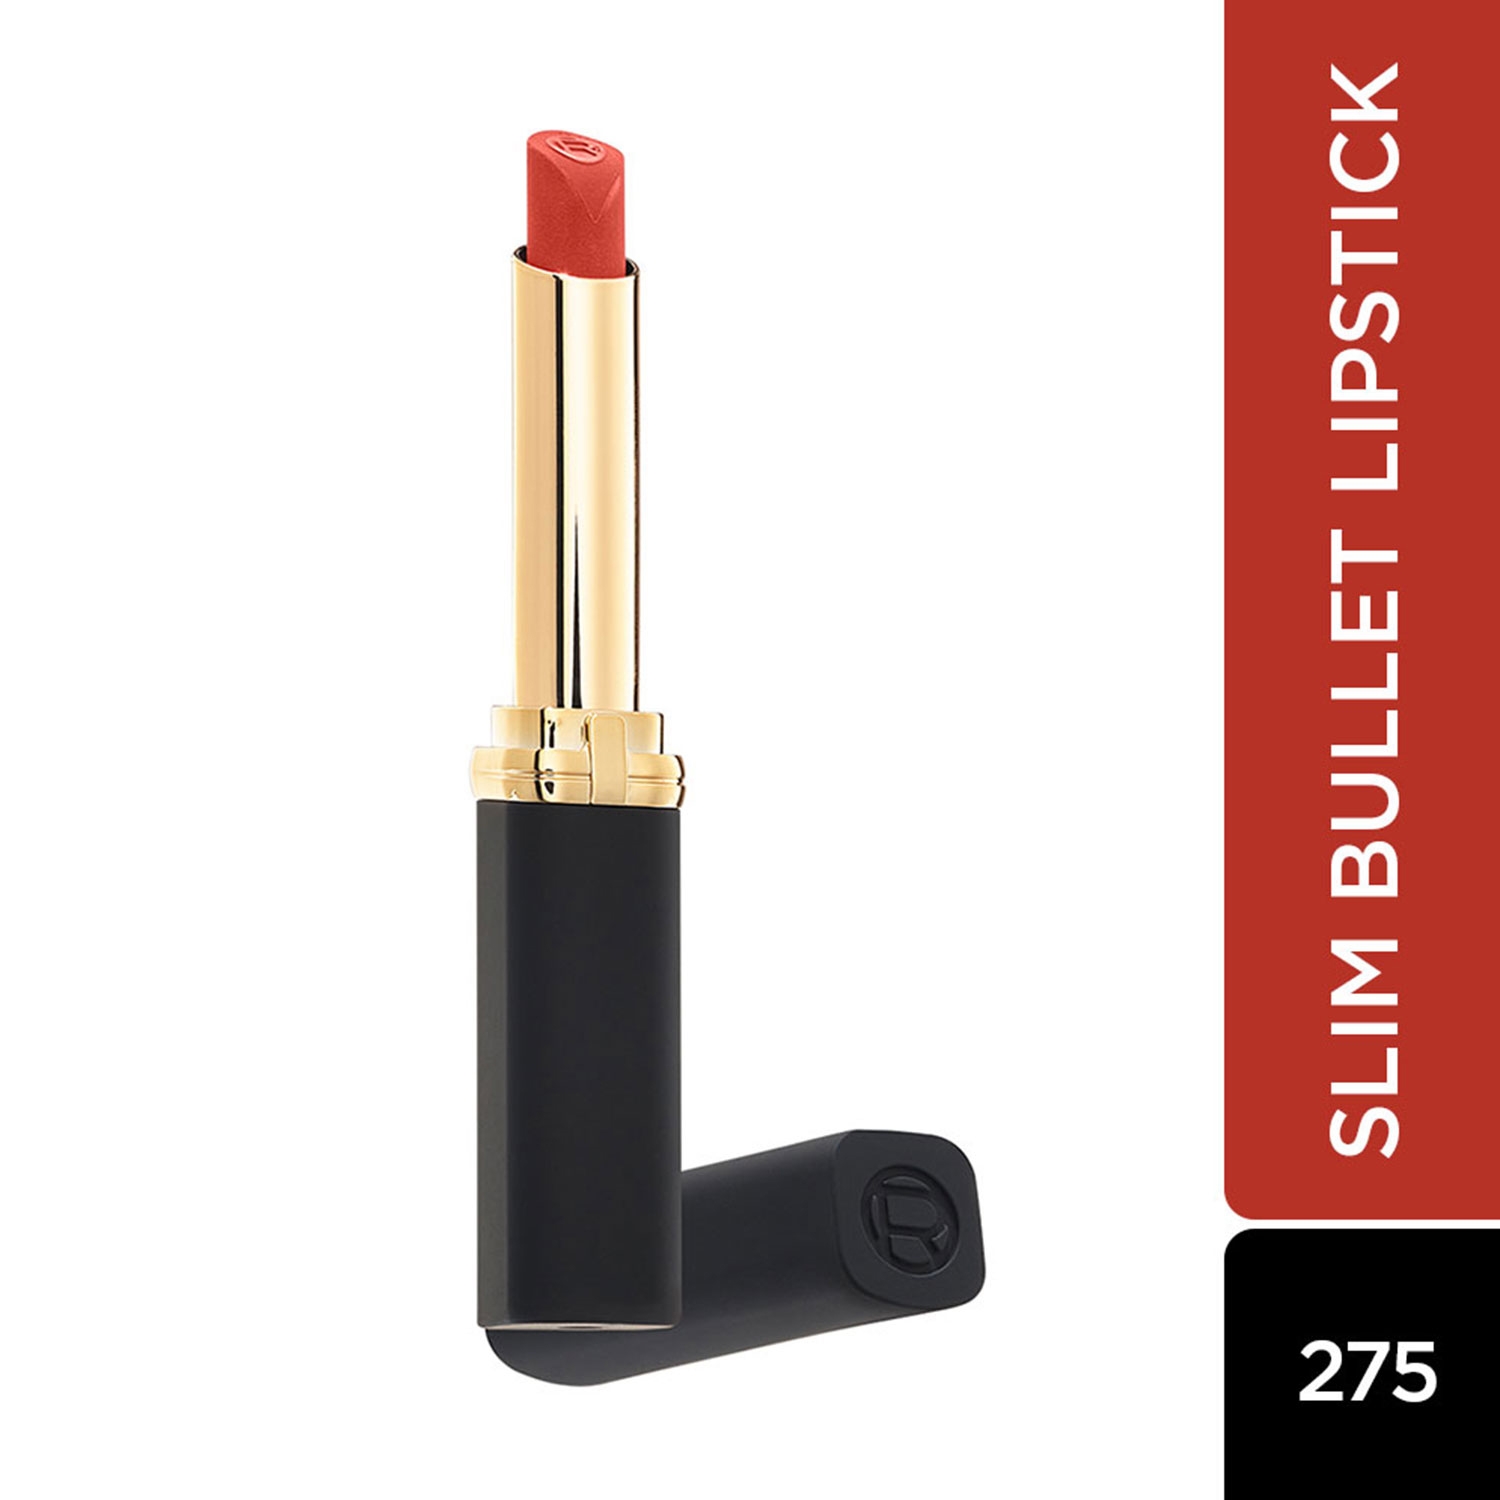 L'Oreal Paris Color Riche Intense Volume Matte Lipstick - 275 La Terra Attitude (1.8g)